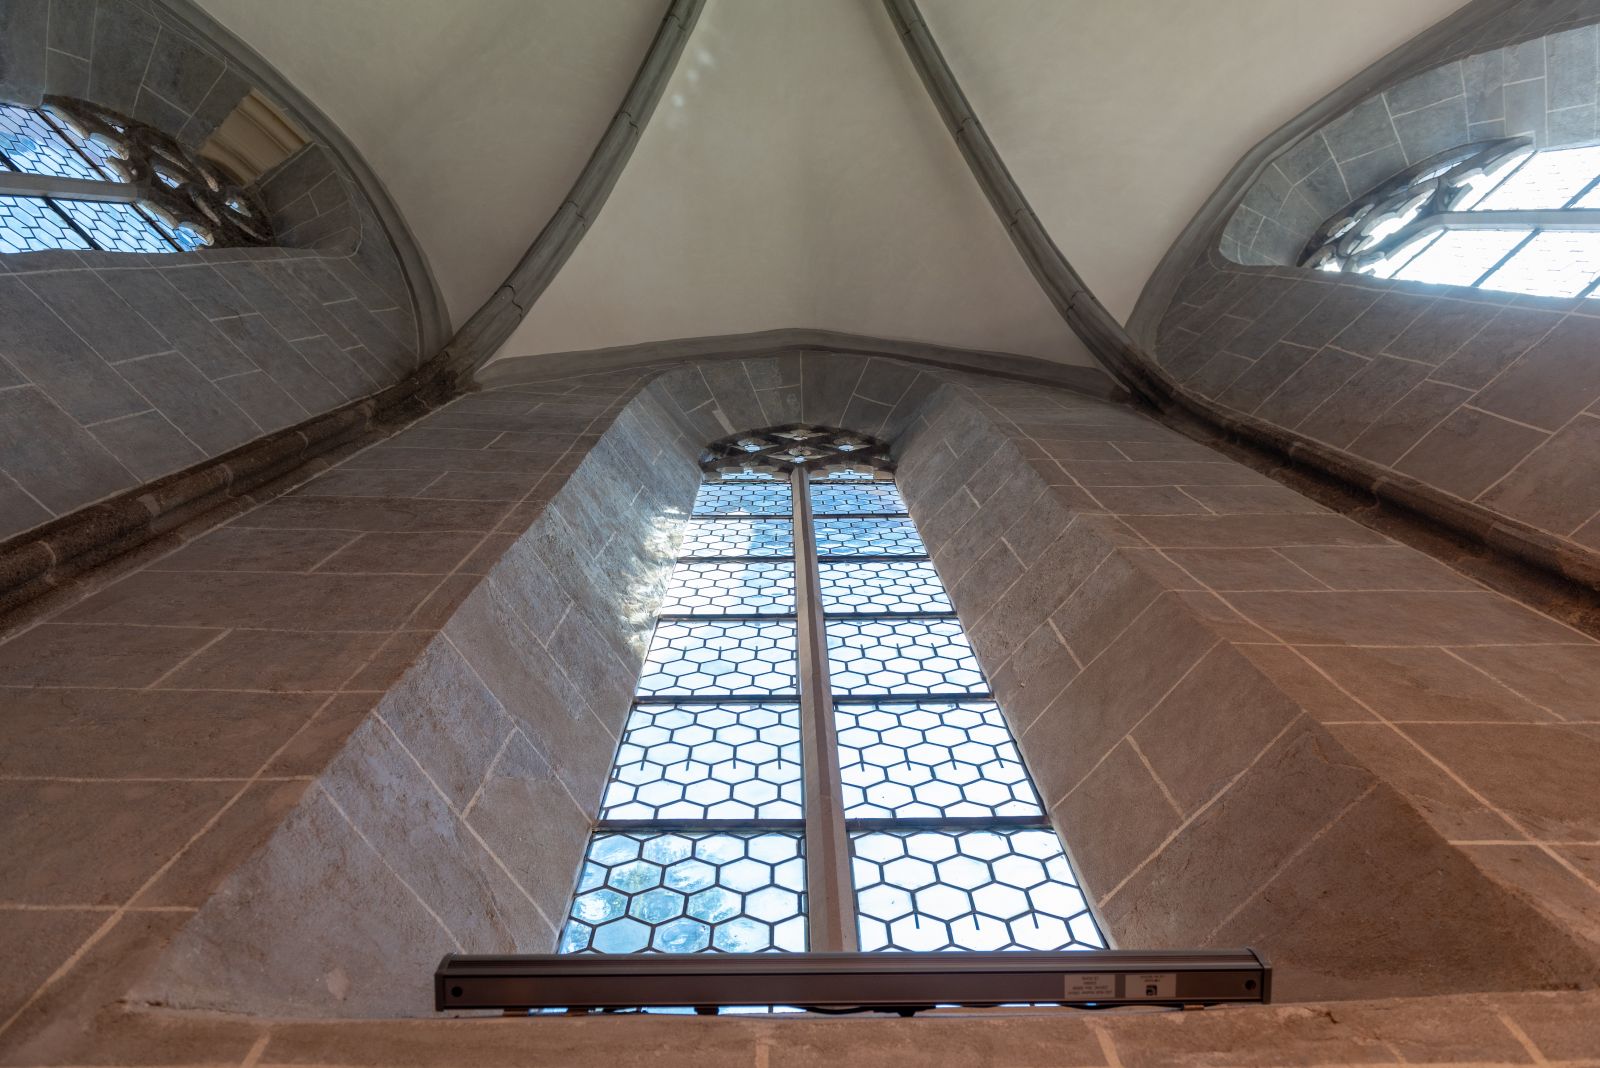 A felújítás során kiderült, hogy a templom ablakai eredetileg sokkal magasabbak voltak, mint azt eddig láthattuk. Ezeket is visszaállították eredeti állapotukra, így az ablakok jelentős része 1 méterrel bővült, így több fény jut be a templomba.